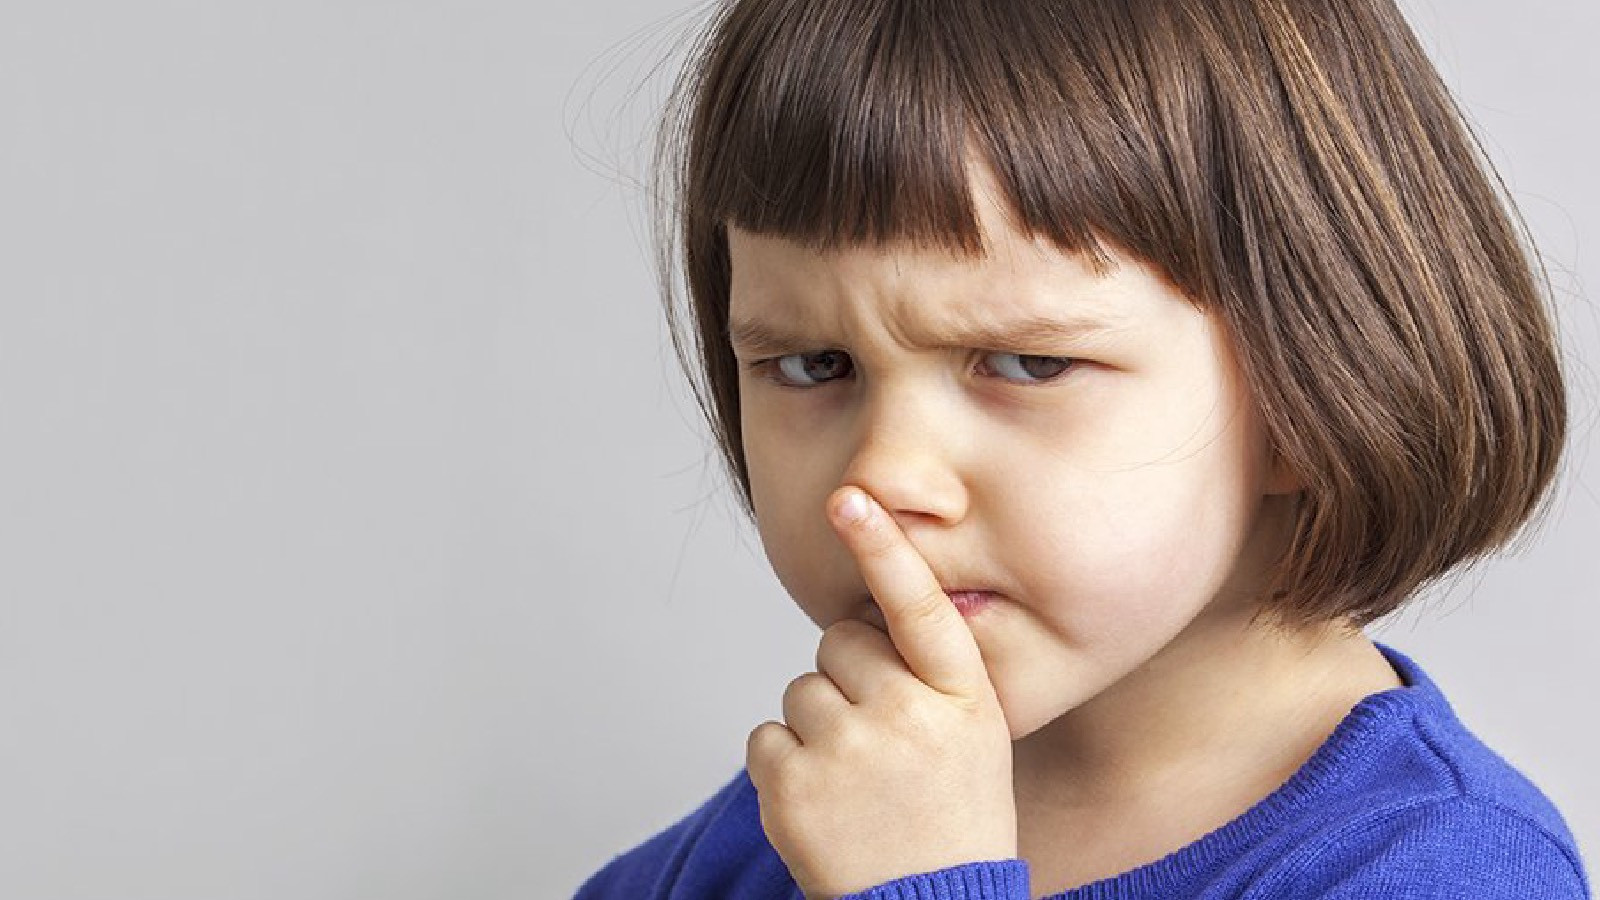 Çocuklar, öfkeyi duygusal bir ifade biçimi olarak kullanırlar ve bunu öğrenirler.